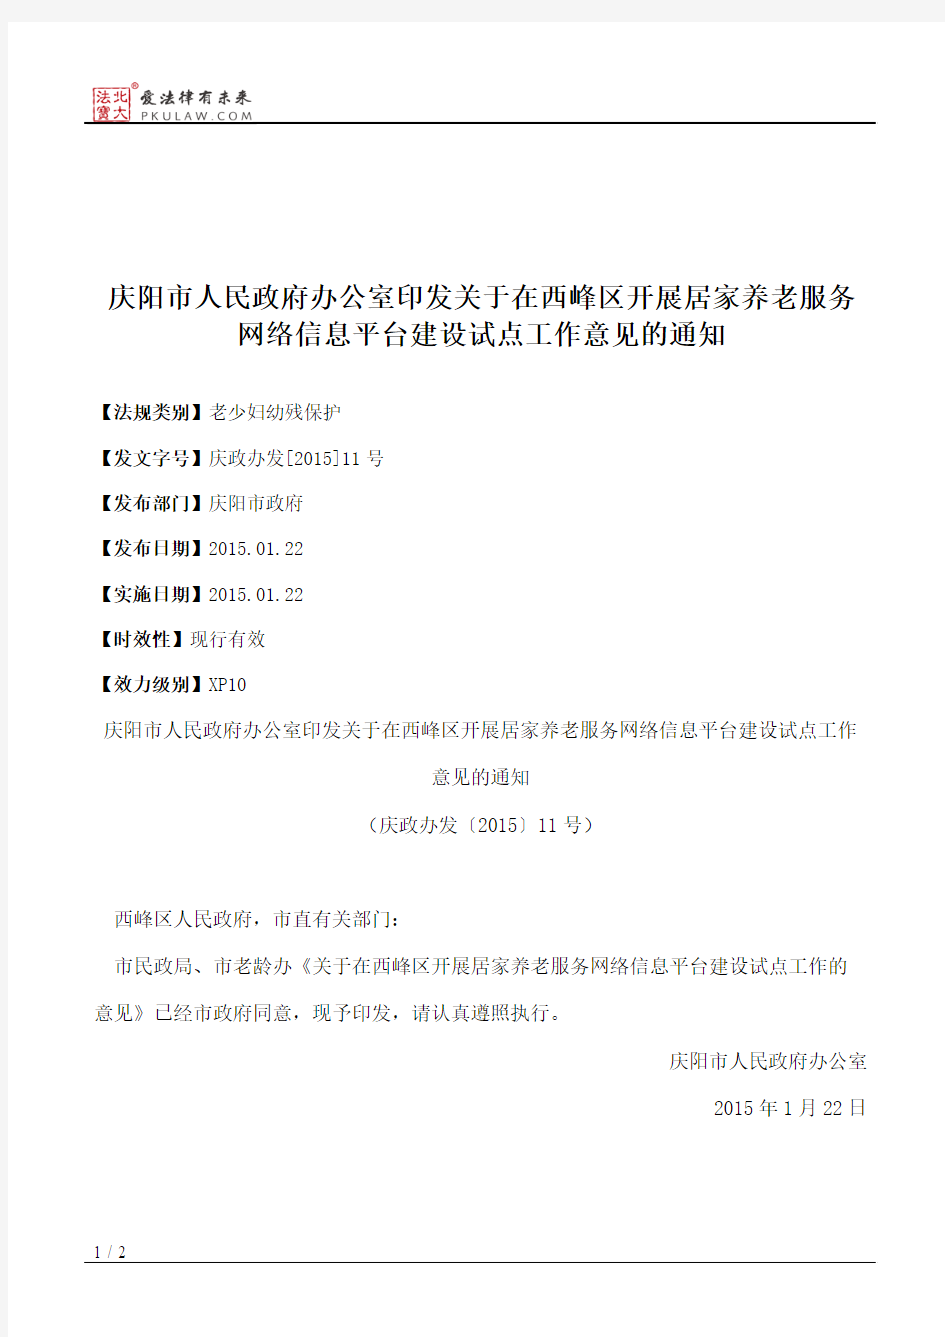 庆阳市人民政府办公室印发关于在西峰区开展居家养老服务网络信息